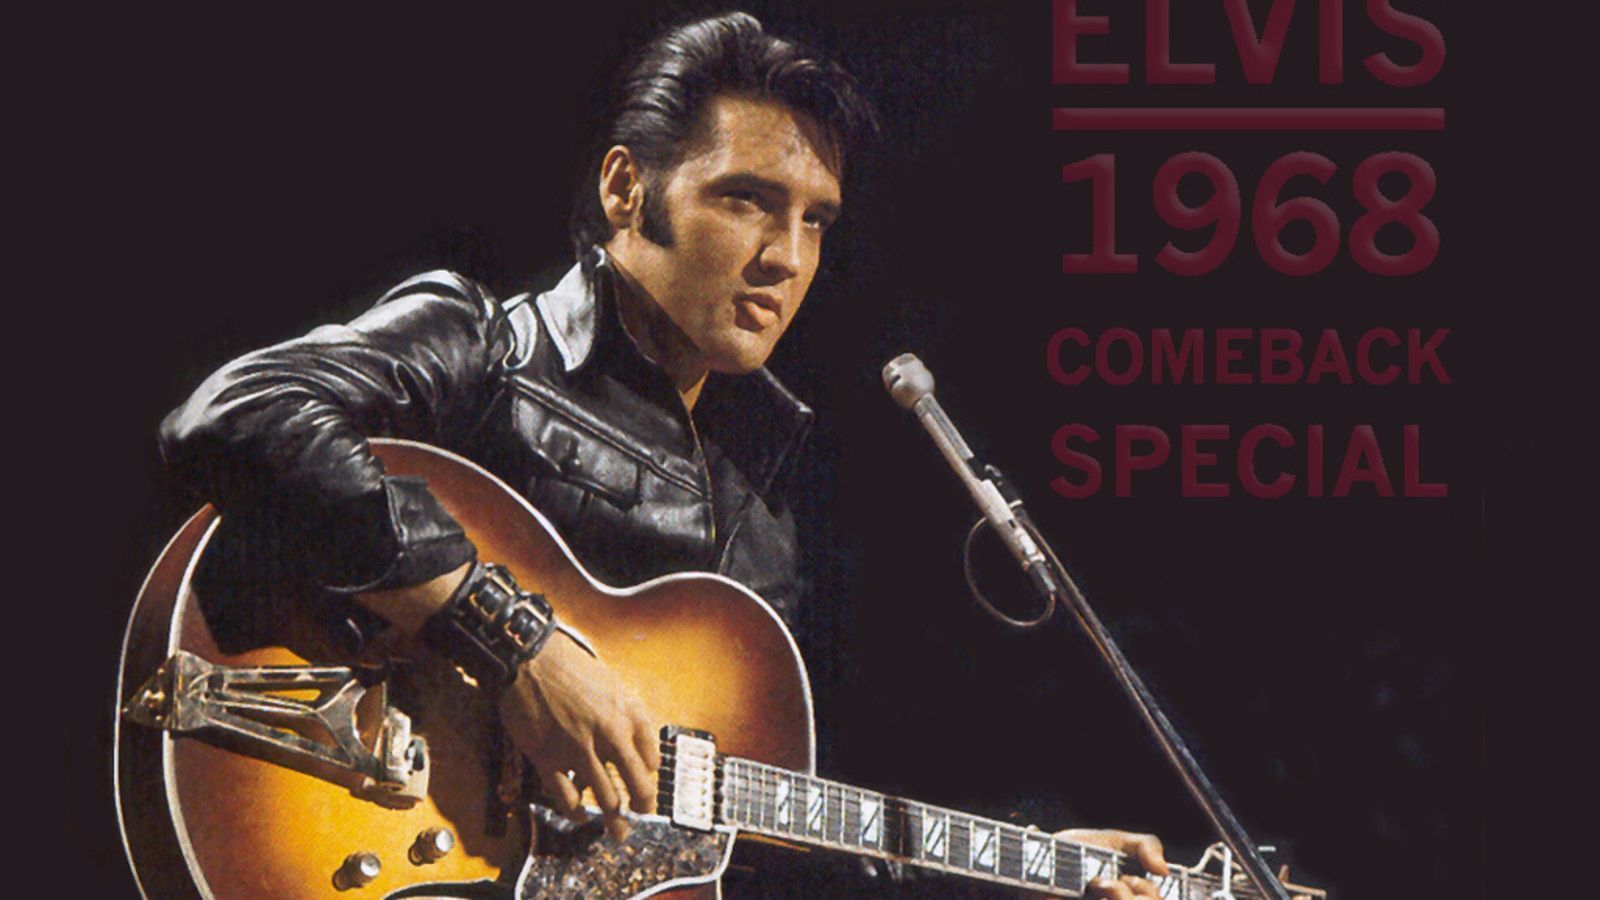 Elvis Presley Desktop Wallpaper - HD Wallpapers Backgrounds of ...